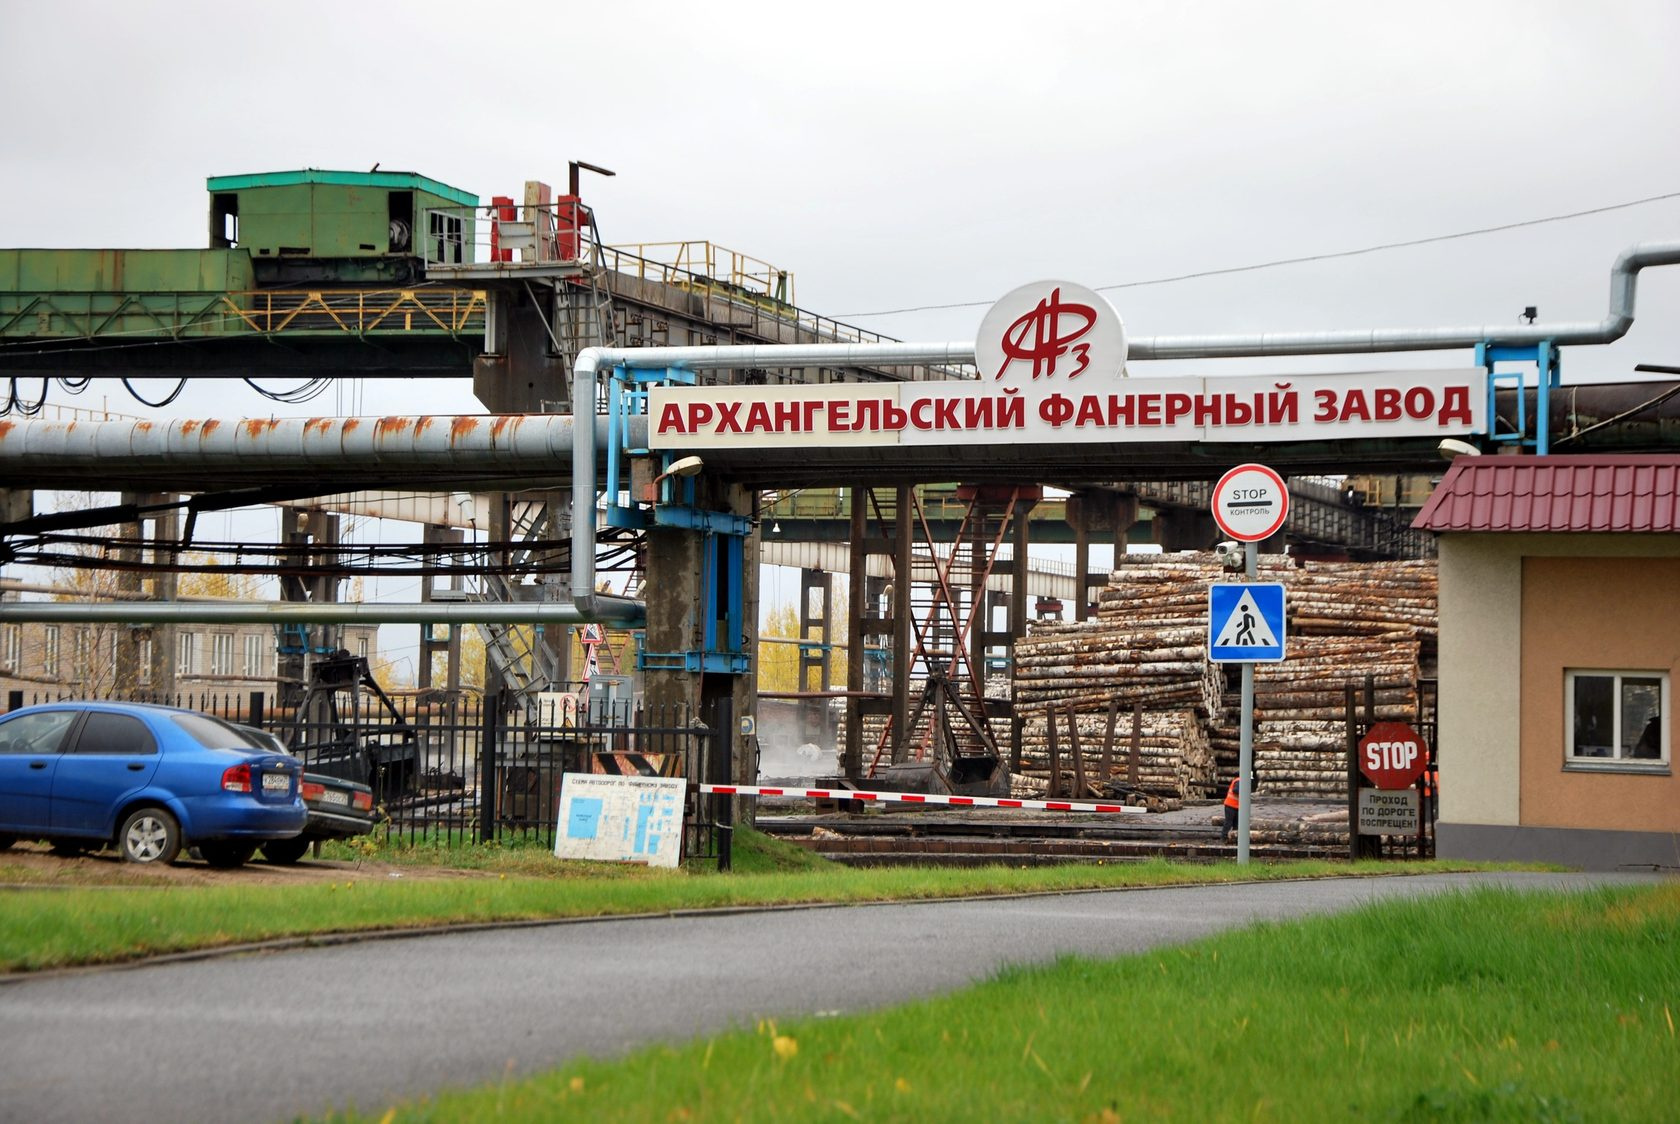 Архангельский фанерный завод поддерживает творческие и спортивные увлечения своих работников. Регулярно проходят мероприятия и соревнования, где можно себя проявить